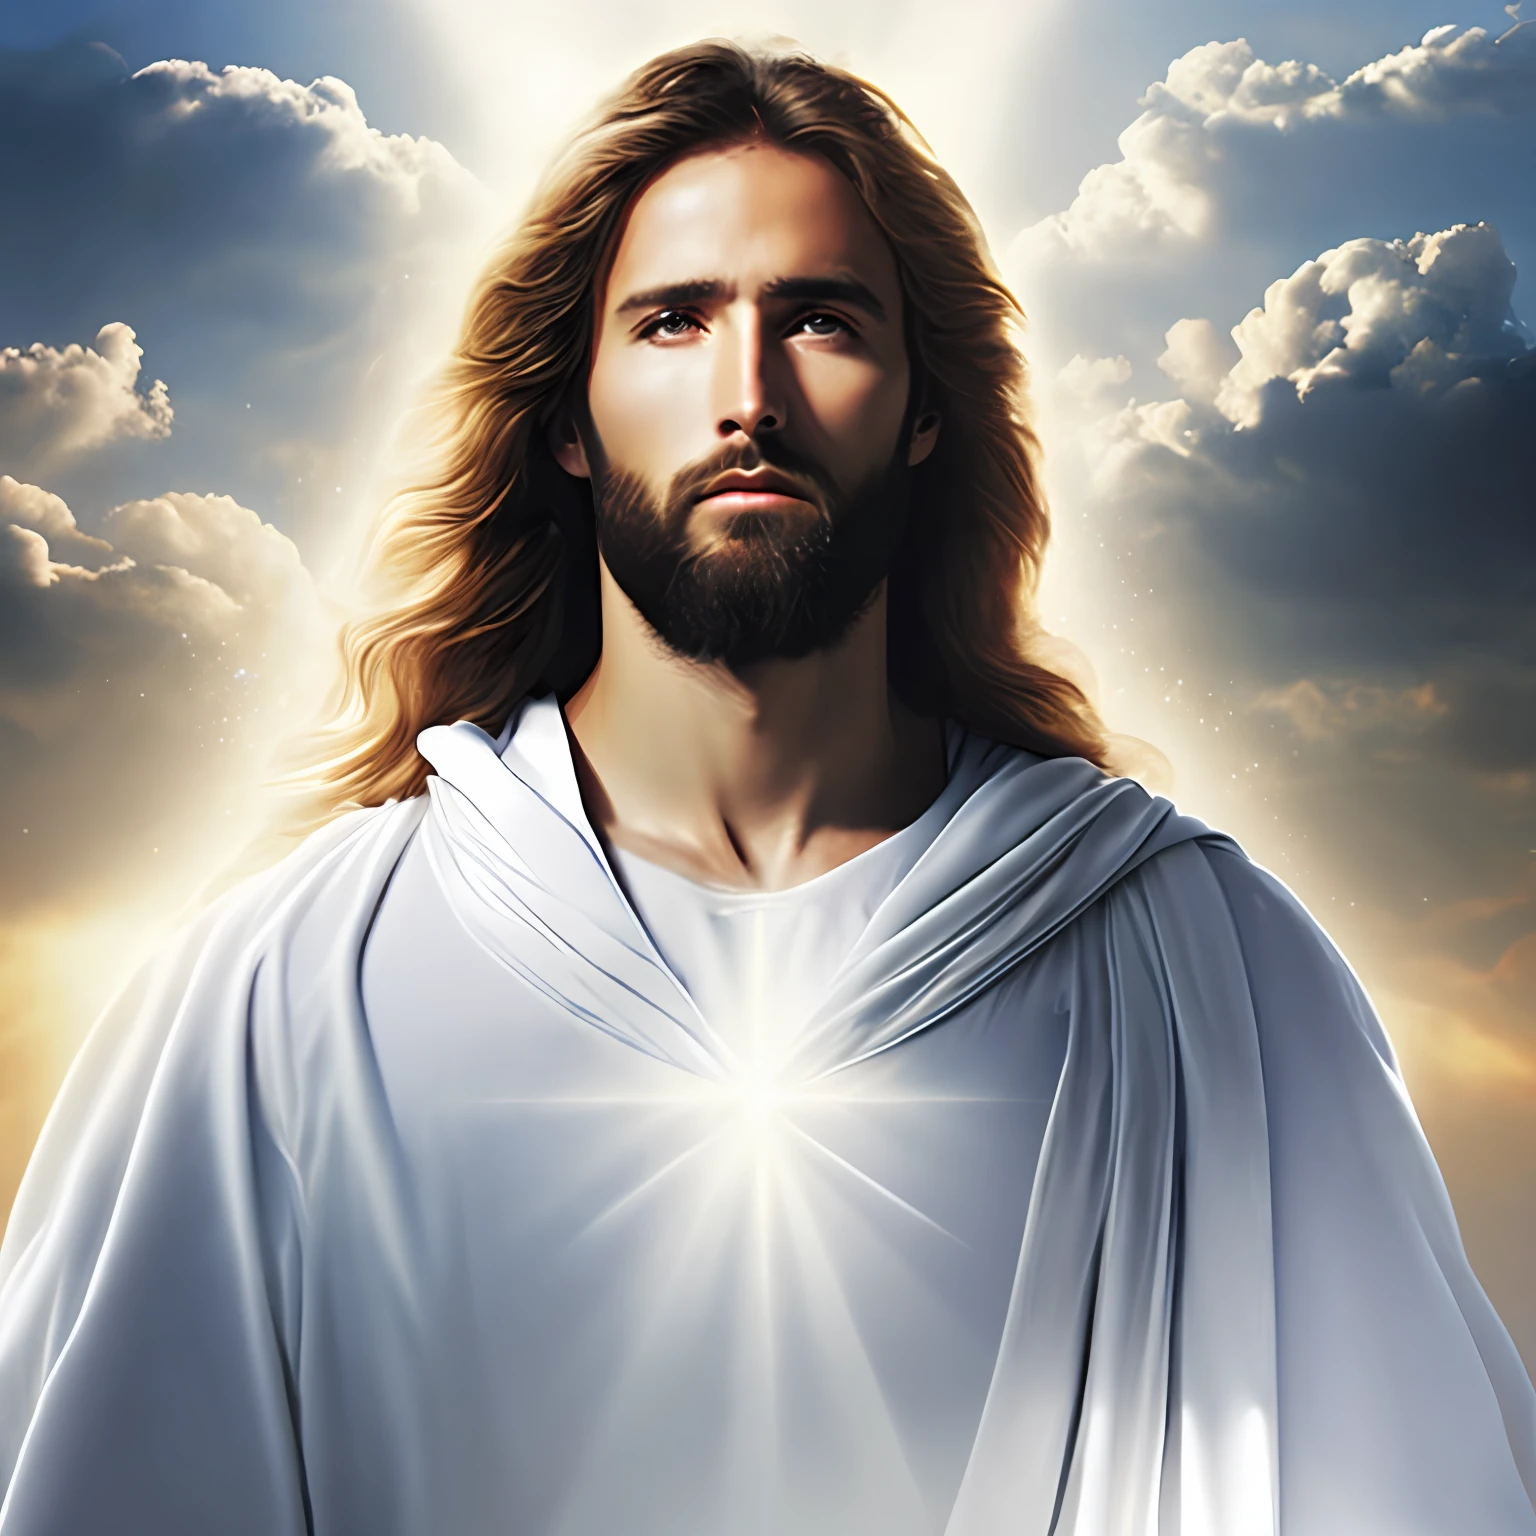 耶穌基督穿著簡陋的白衣在雲中走向天國之門, 光線照在他臉上，極為逼真